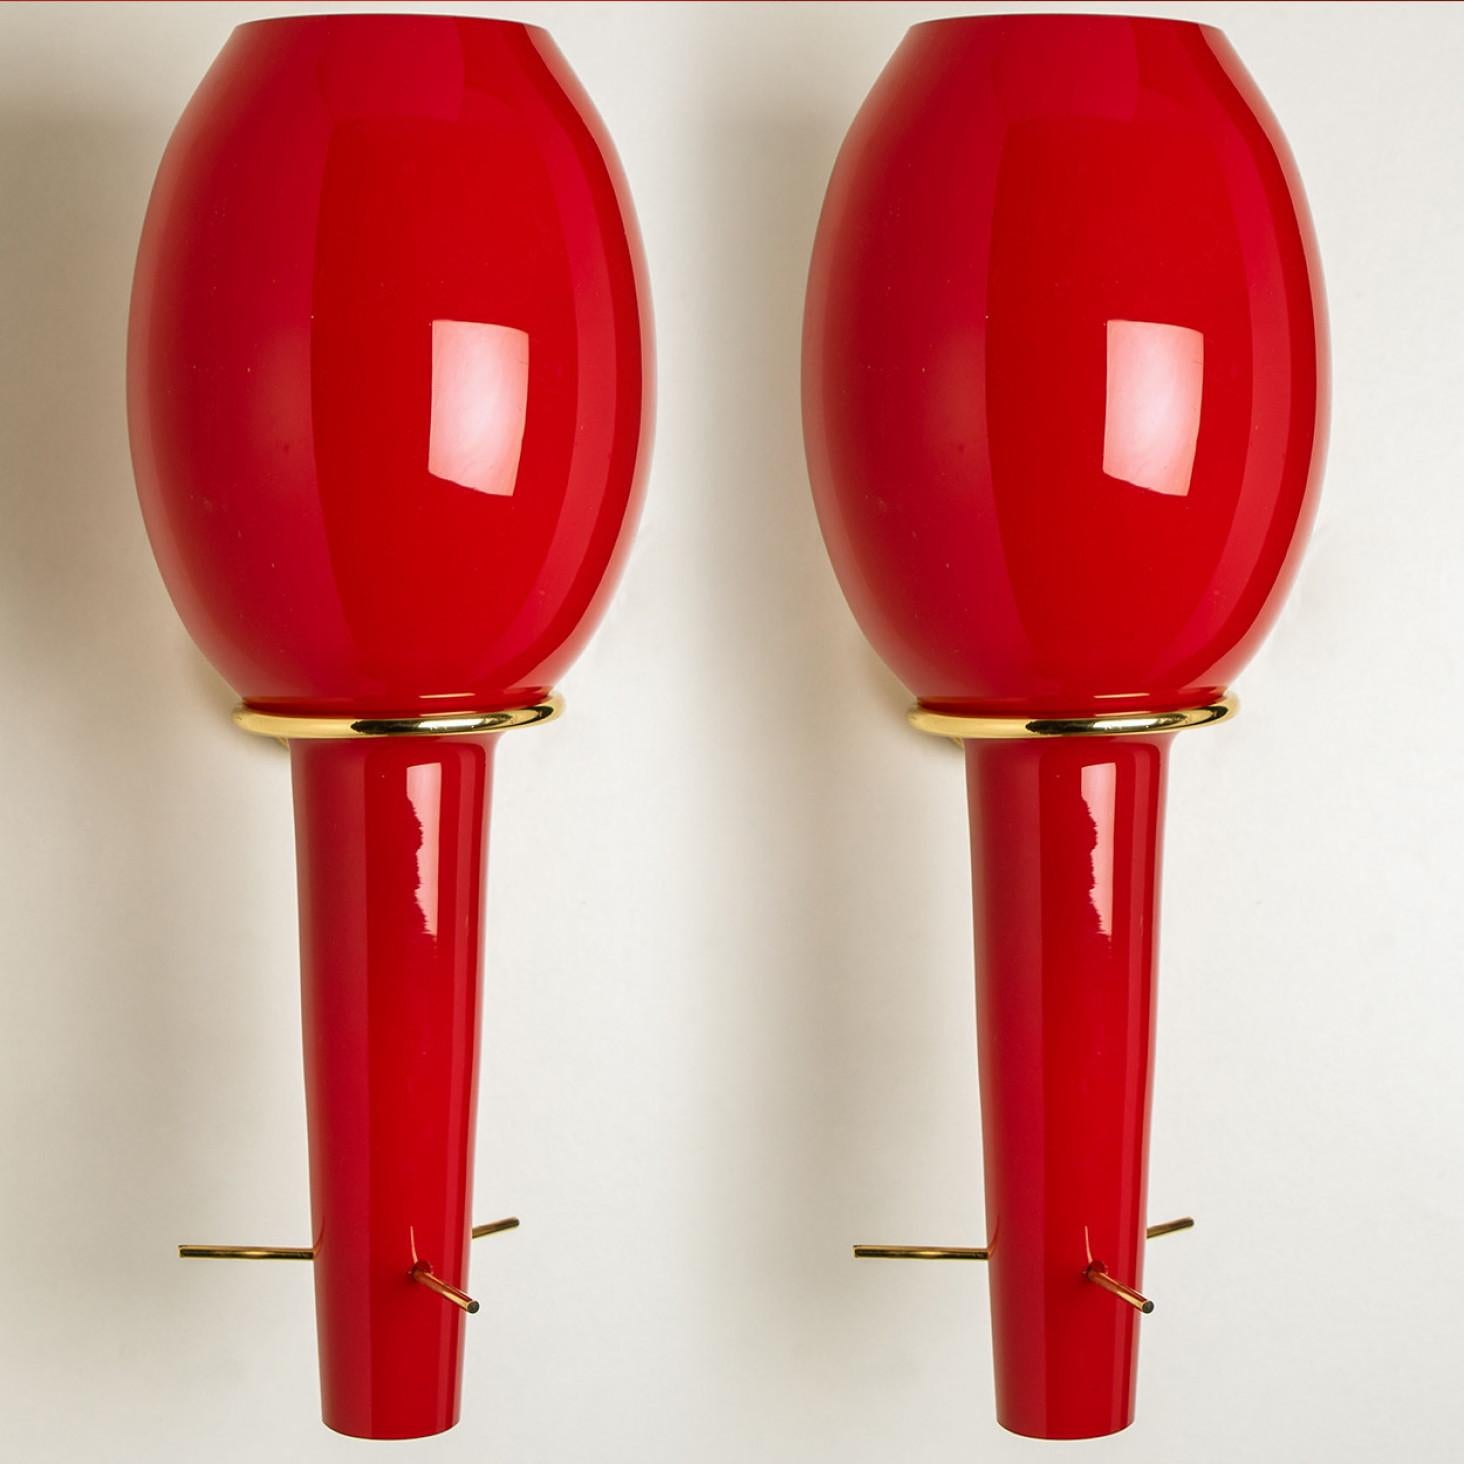 Verspielte, leuchtend rote Wandleuchten, hergestellt von Stilnovo in Italien, Europa, um 1960. Die Wandleuchten bestehen aus einem Messingrahmen, der das rote Glas hält. Wenn die Lichter eingeschaltet sind, geben sie ein warmes, rotes Licht ab. Wie